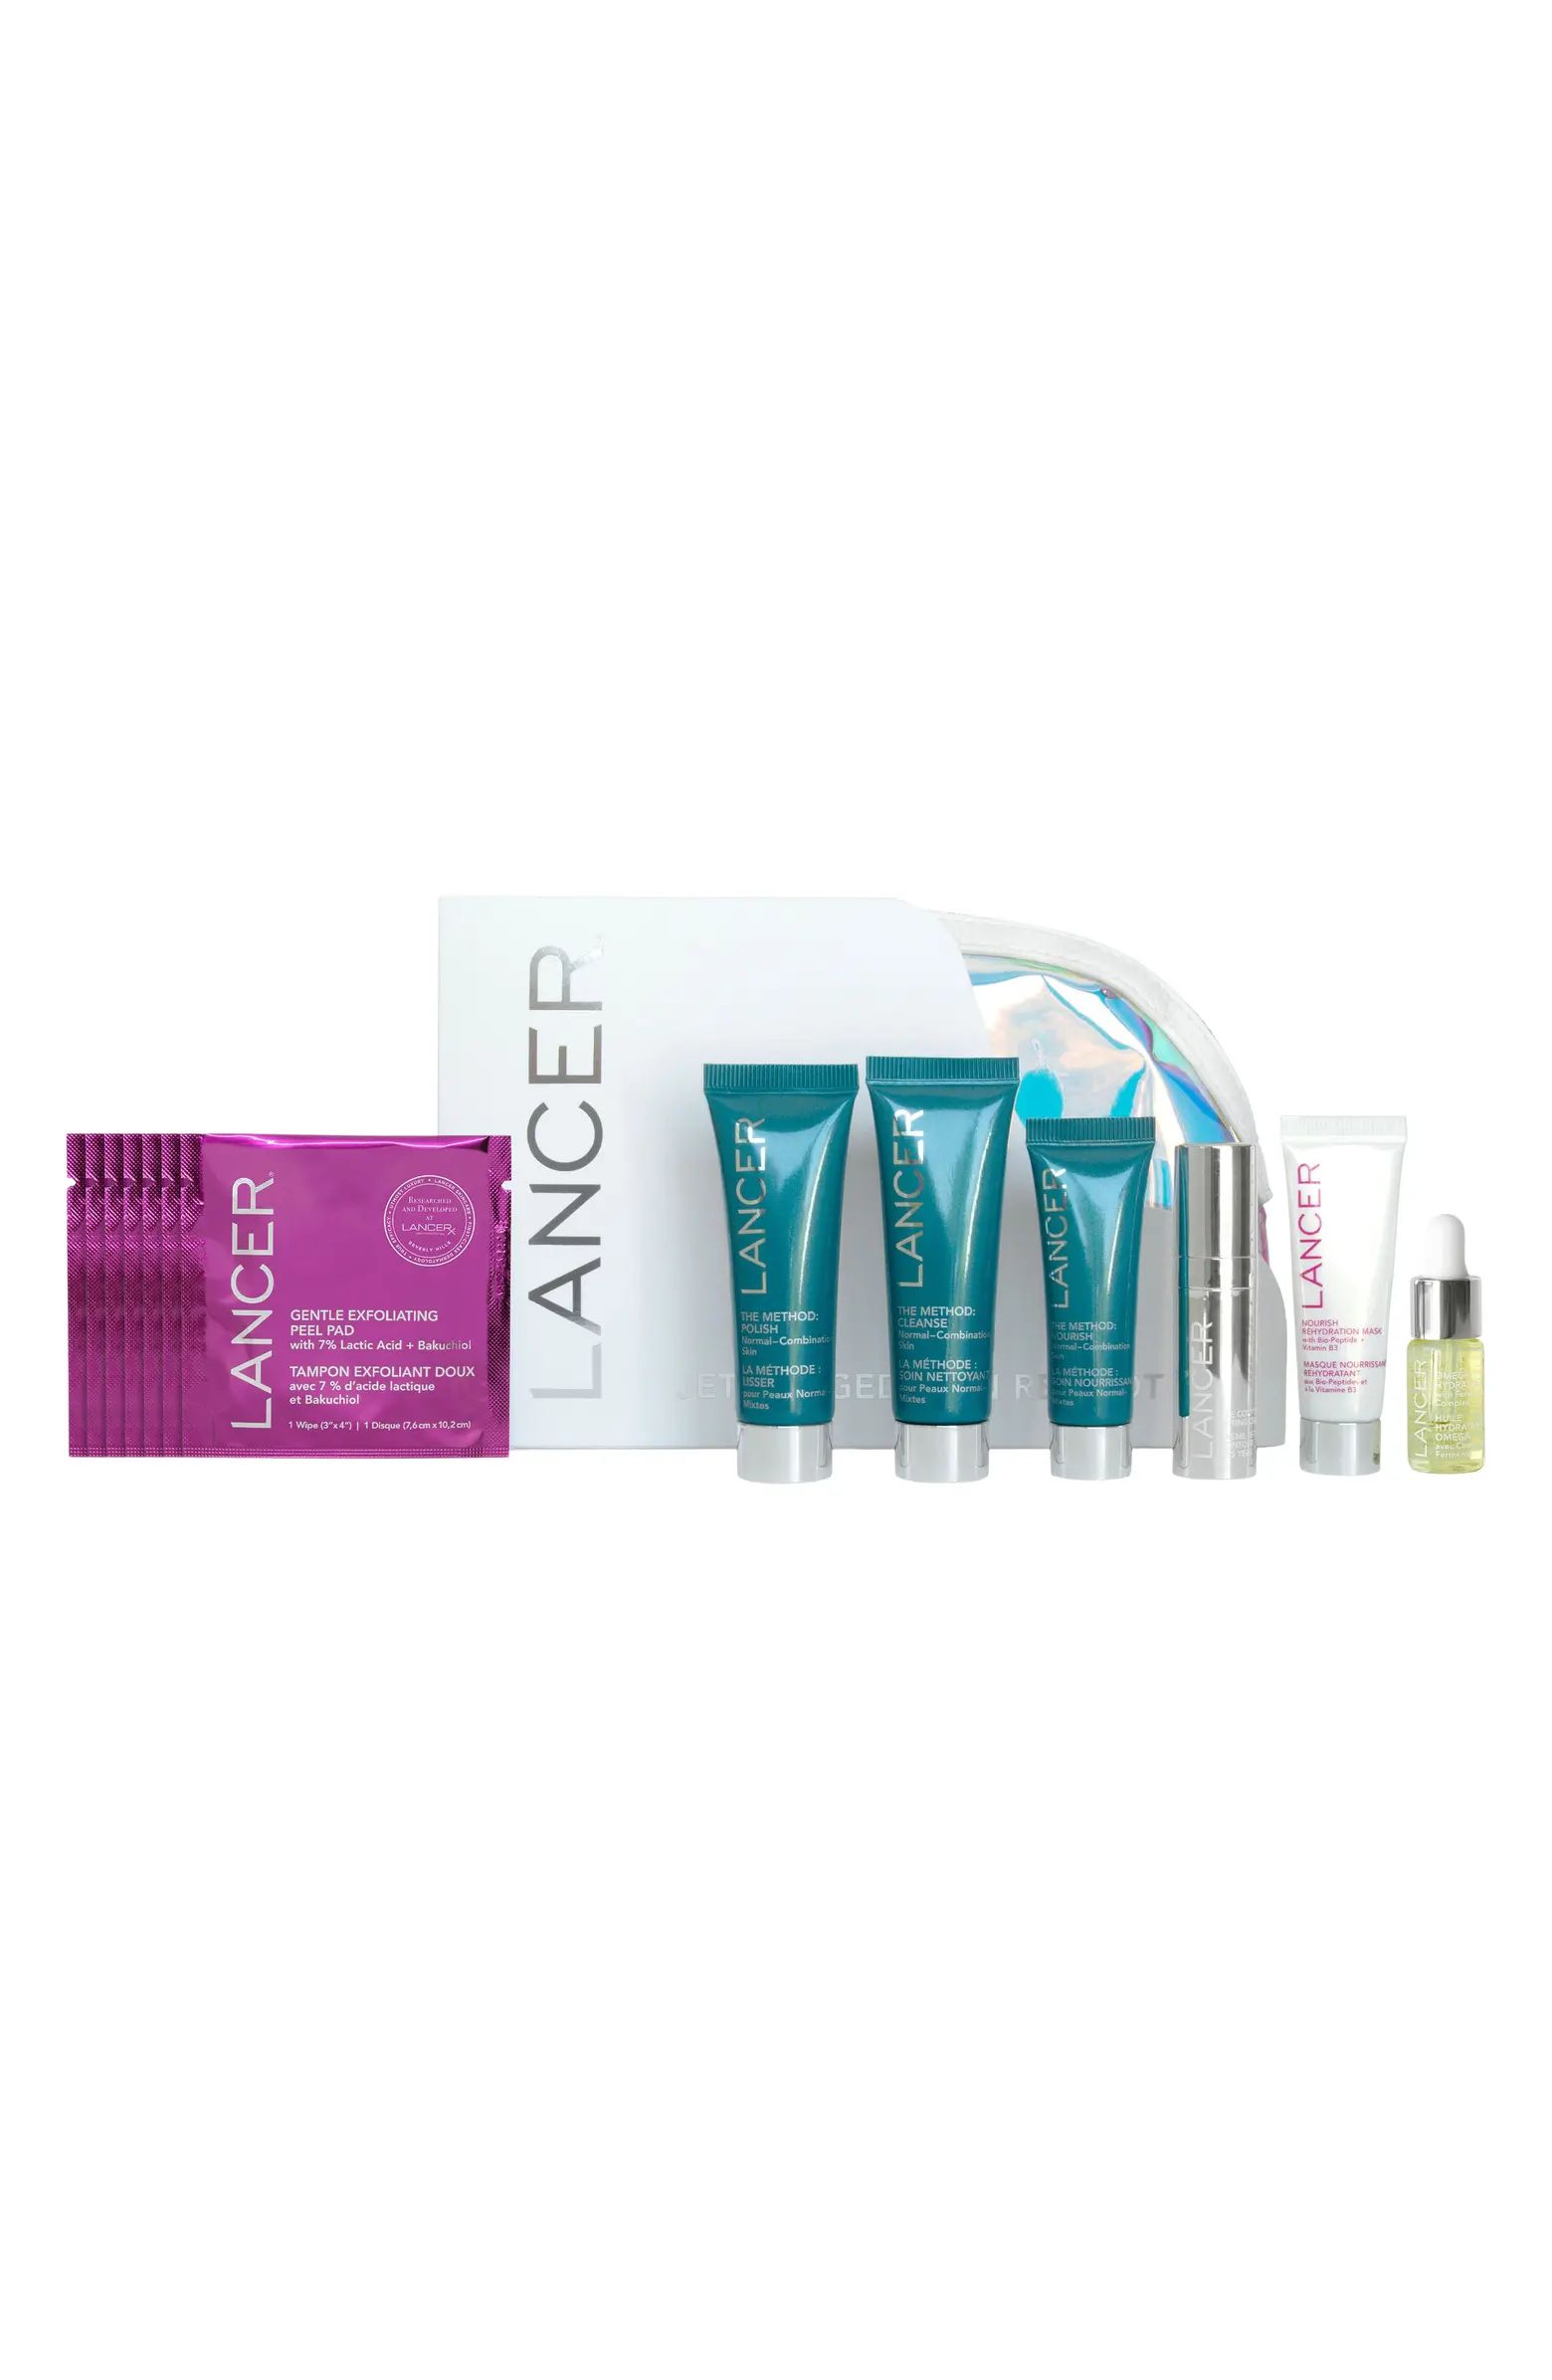 LANCER Skincare Jet Lagged Skin Reboot Gift Set $140 Value | Nordstrom | Nordstrom